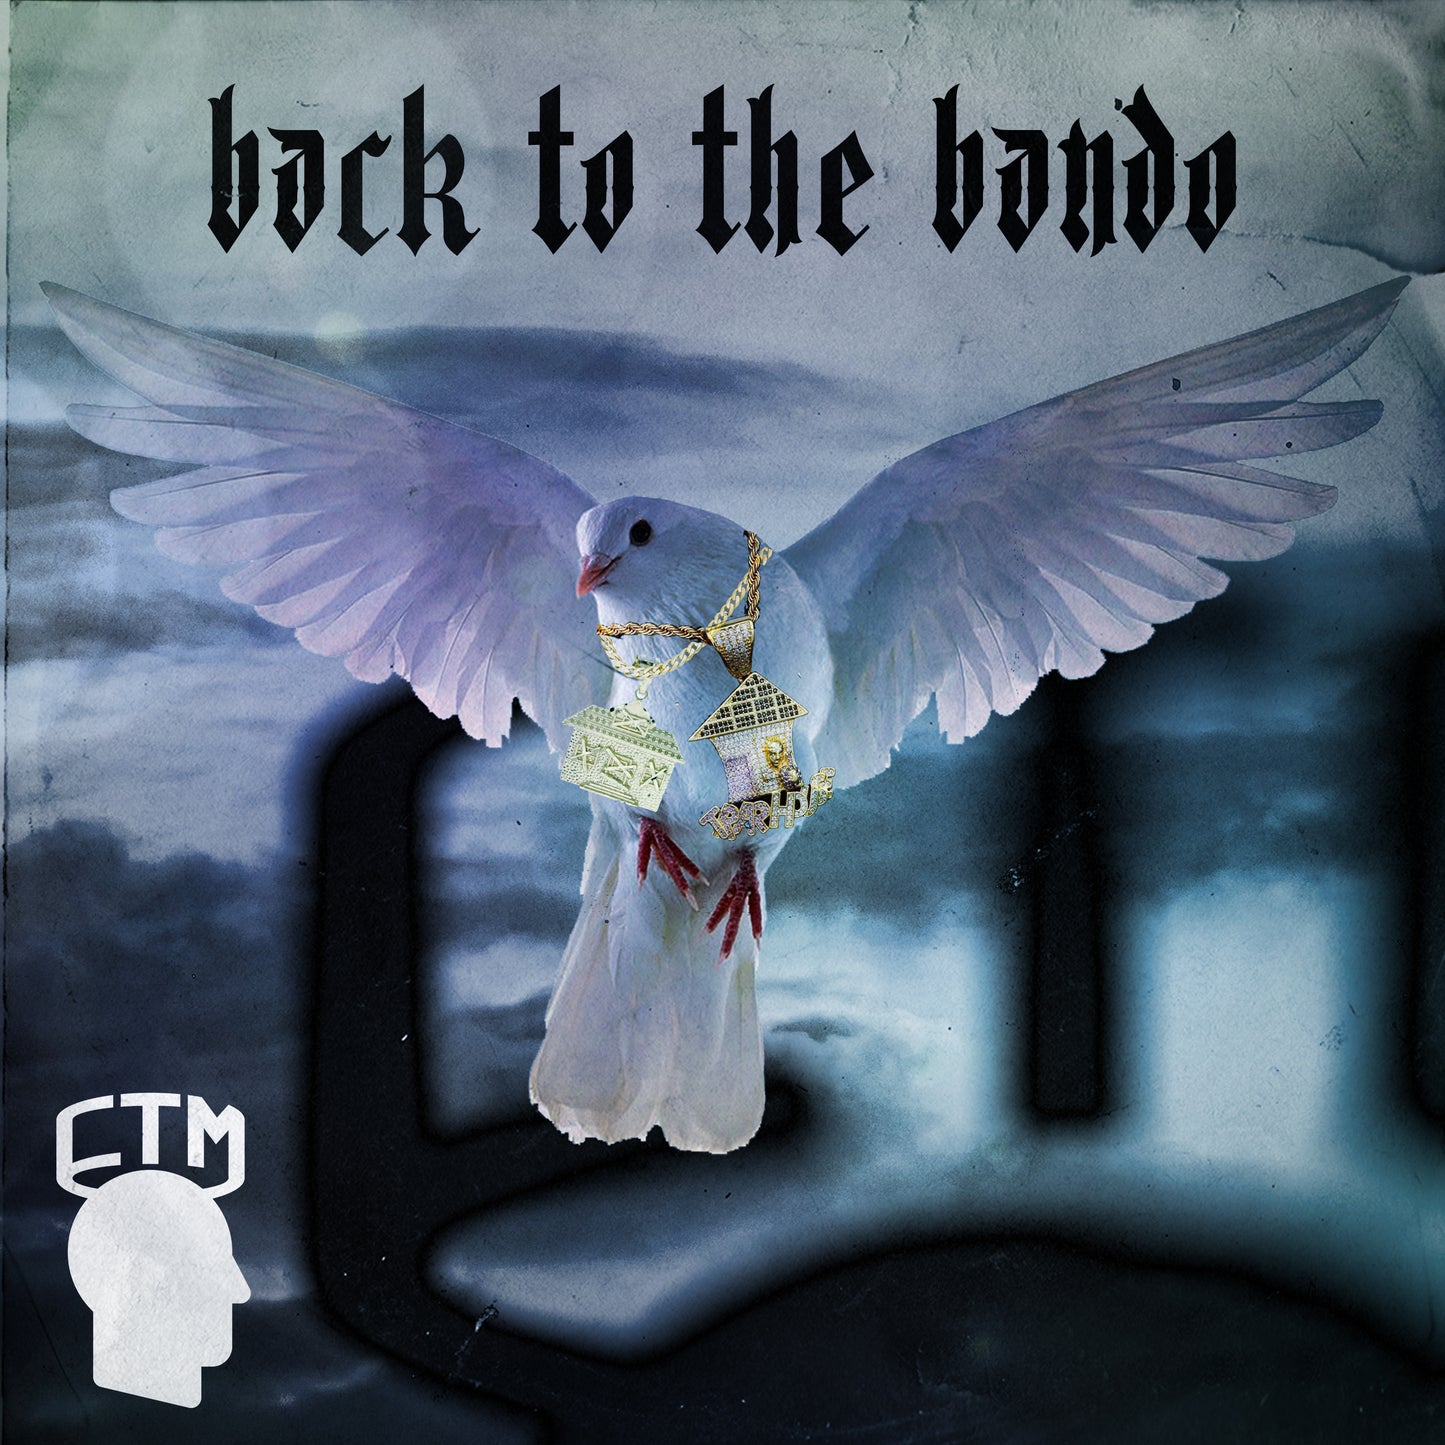 Back To The Bando Loop Kit by Shondonbeats